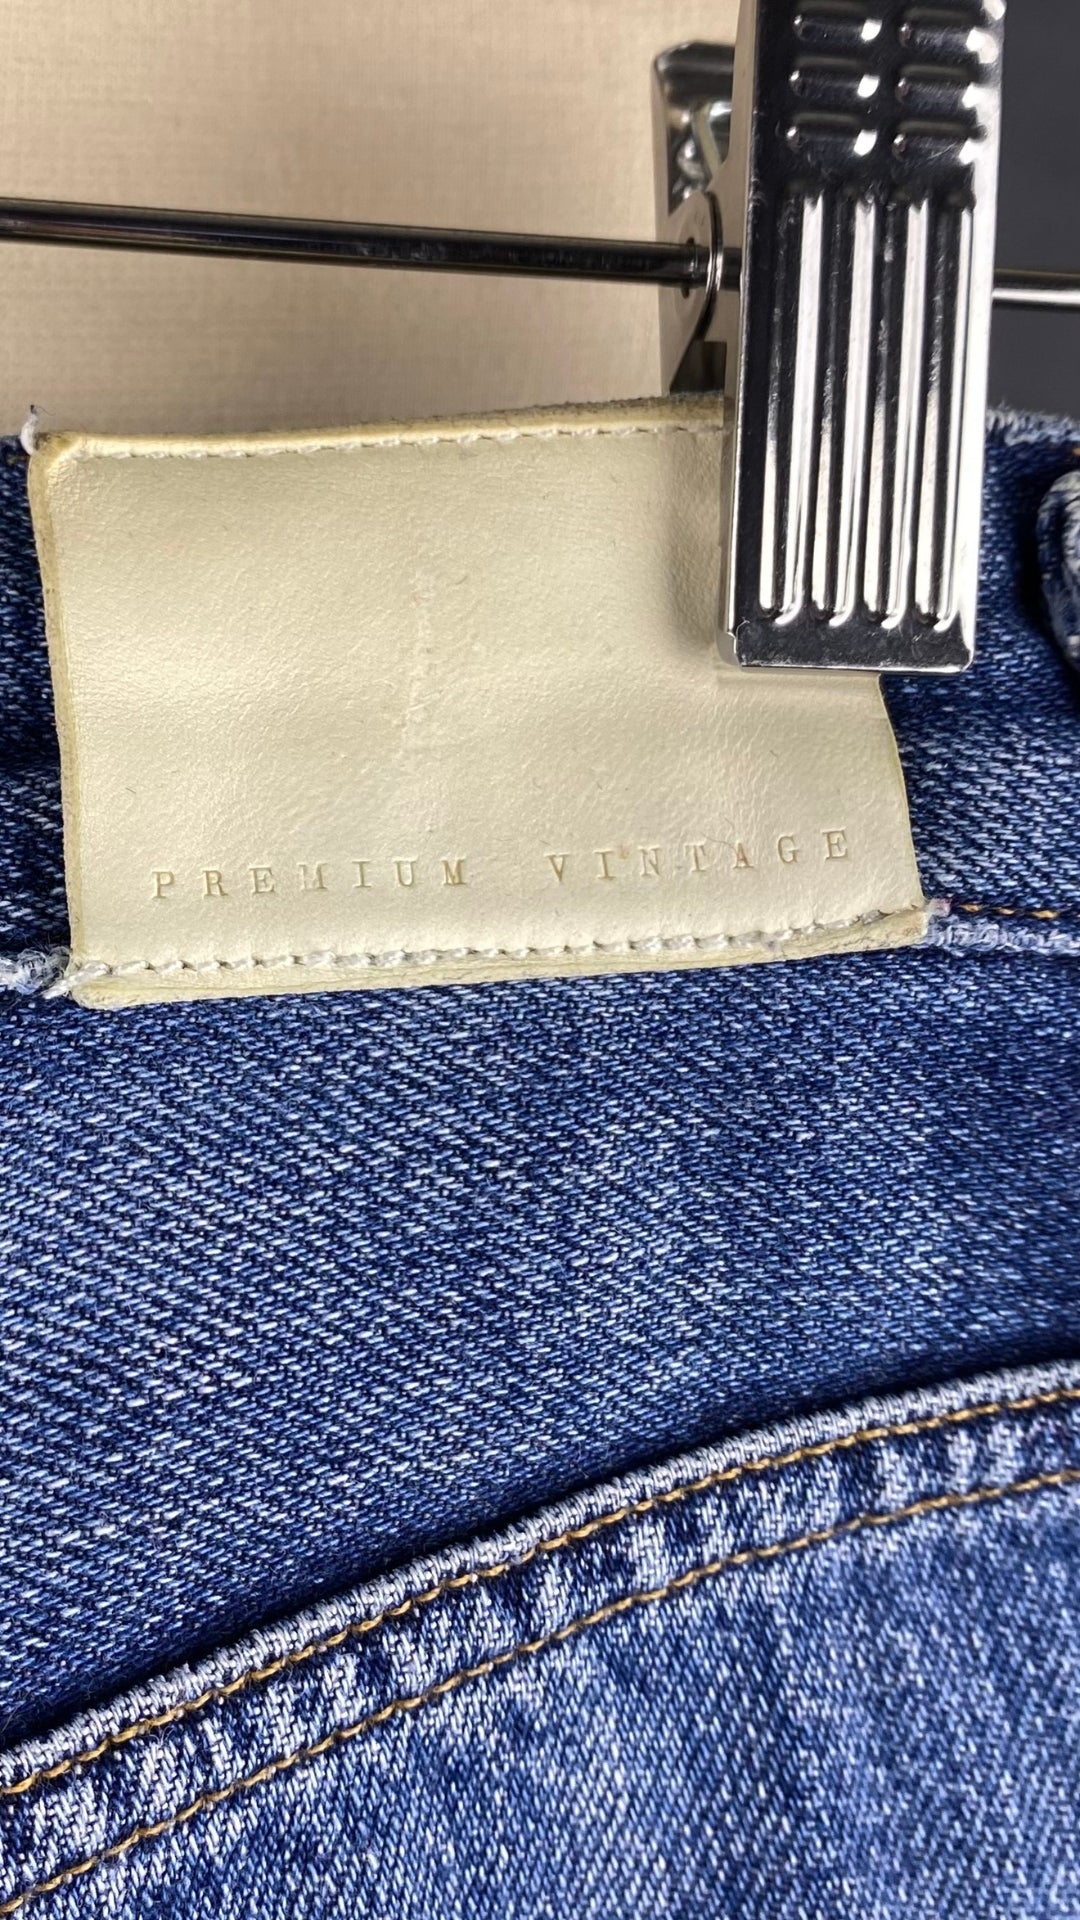 Jeans ajusté taille haute Citizens of Humanity, taille 23. Vue de l'étiquette arrière en cuir.